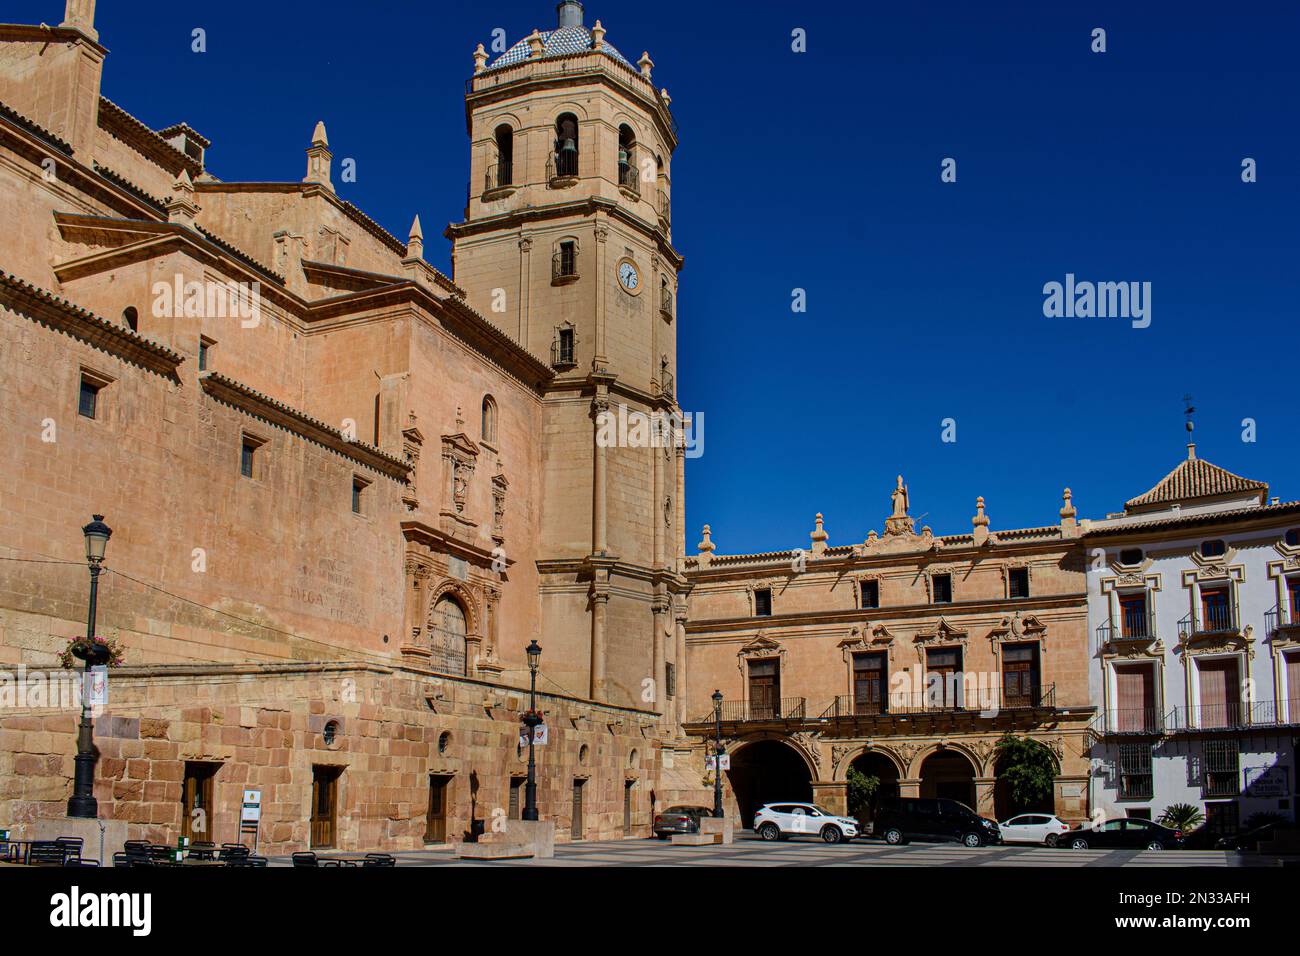 Plaza de España, Lorca, Murcia, Espagne. Le Colegiata de San Patricio (Collégiale de St. Patrick) est sur la gauche. Banque D'Images